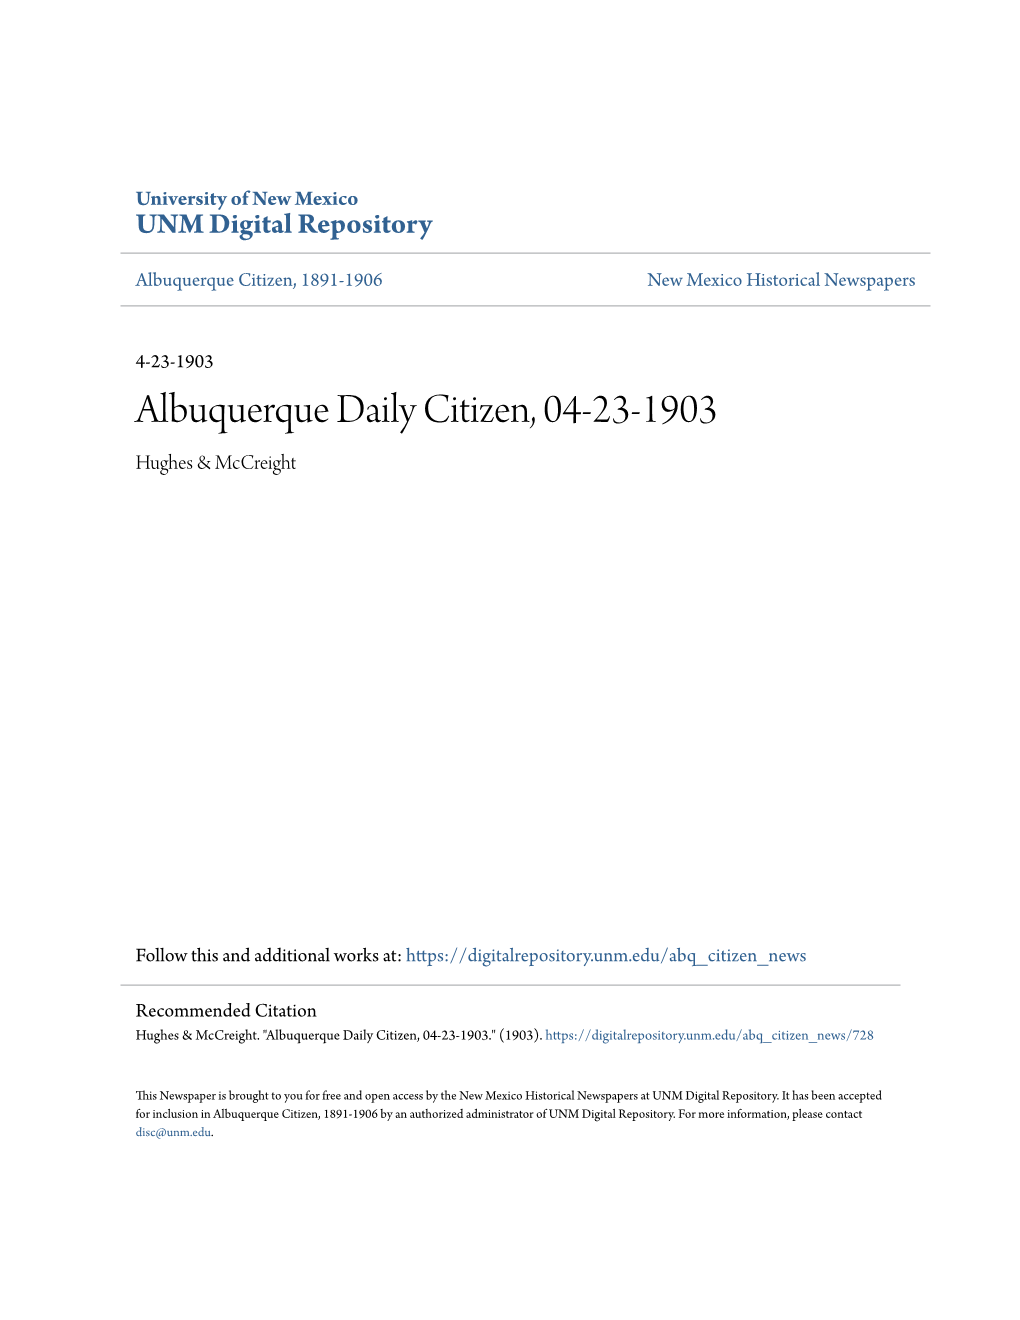 Albuquerque Daily Citizen, 04-23-1903 Hughes & Mccreight